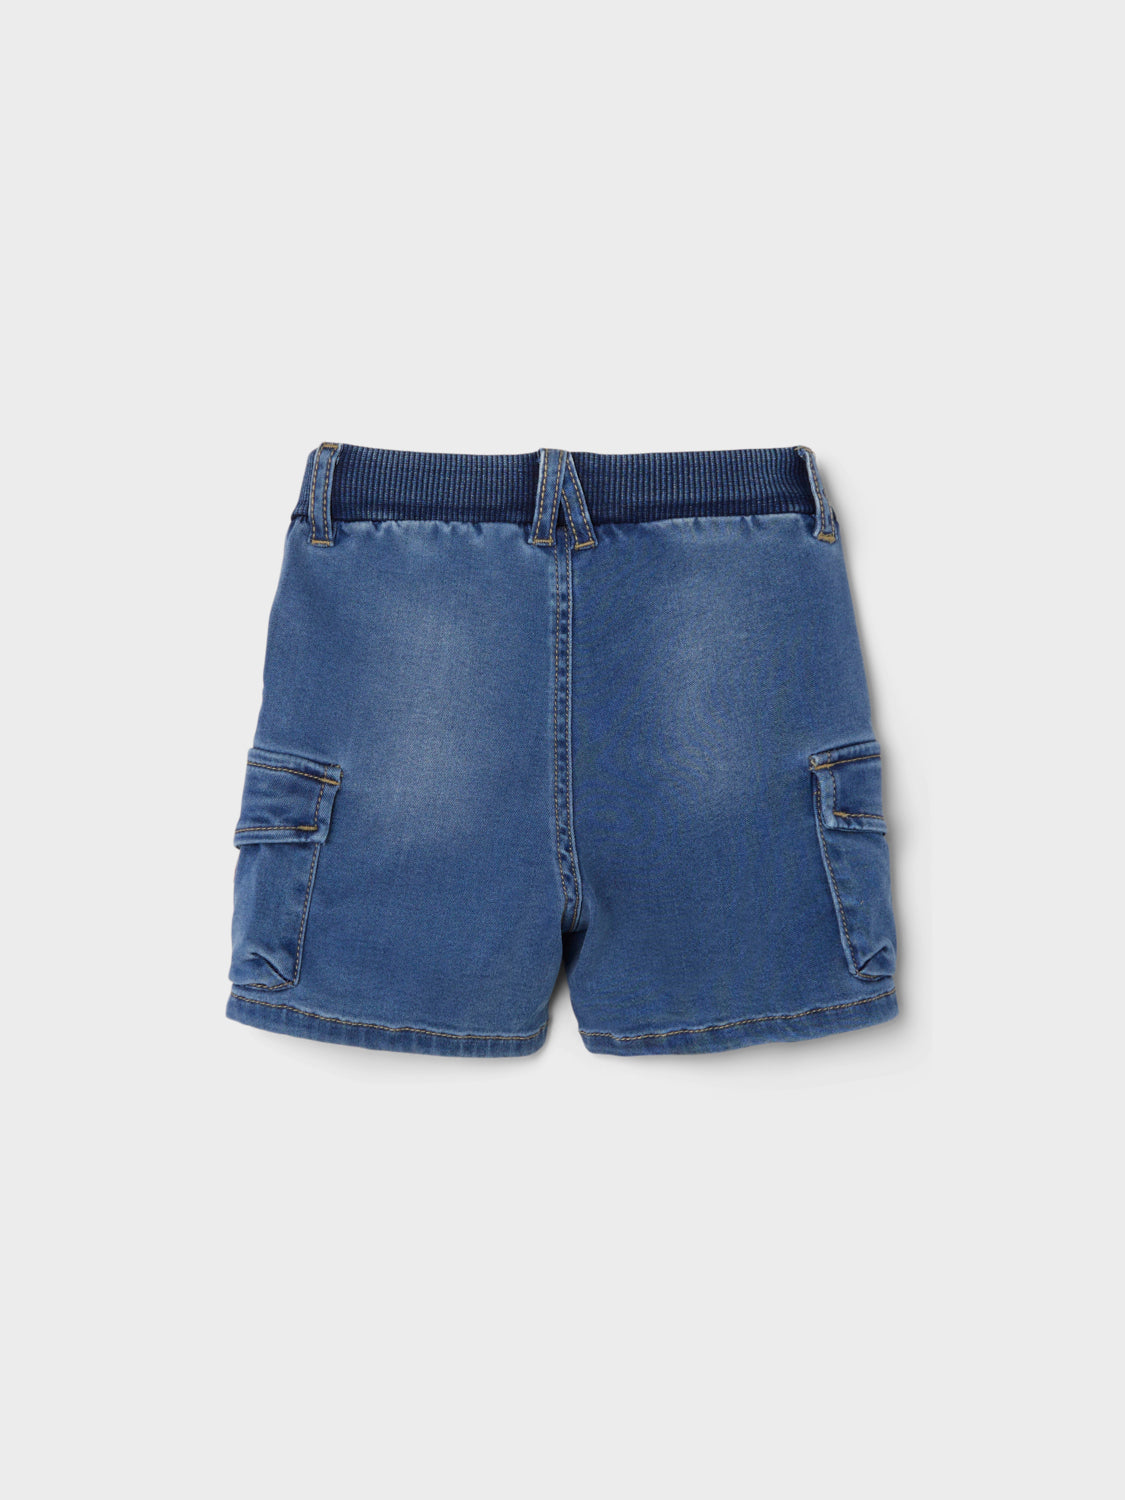 NMMBEN Shorts - Medium Blue Denim